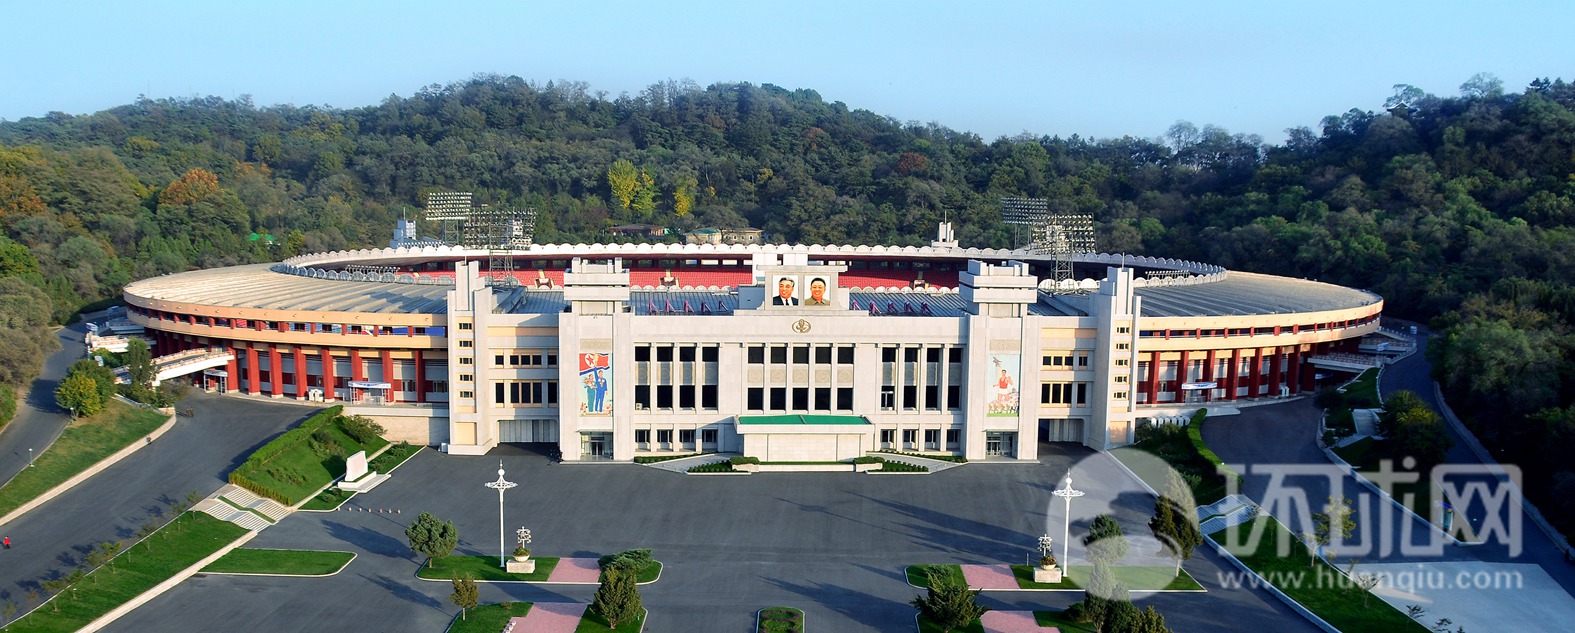 高清图片:朝鲜的著名建筑